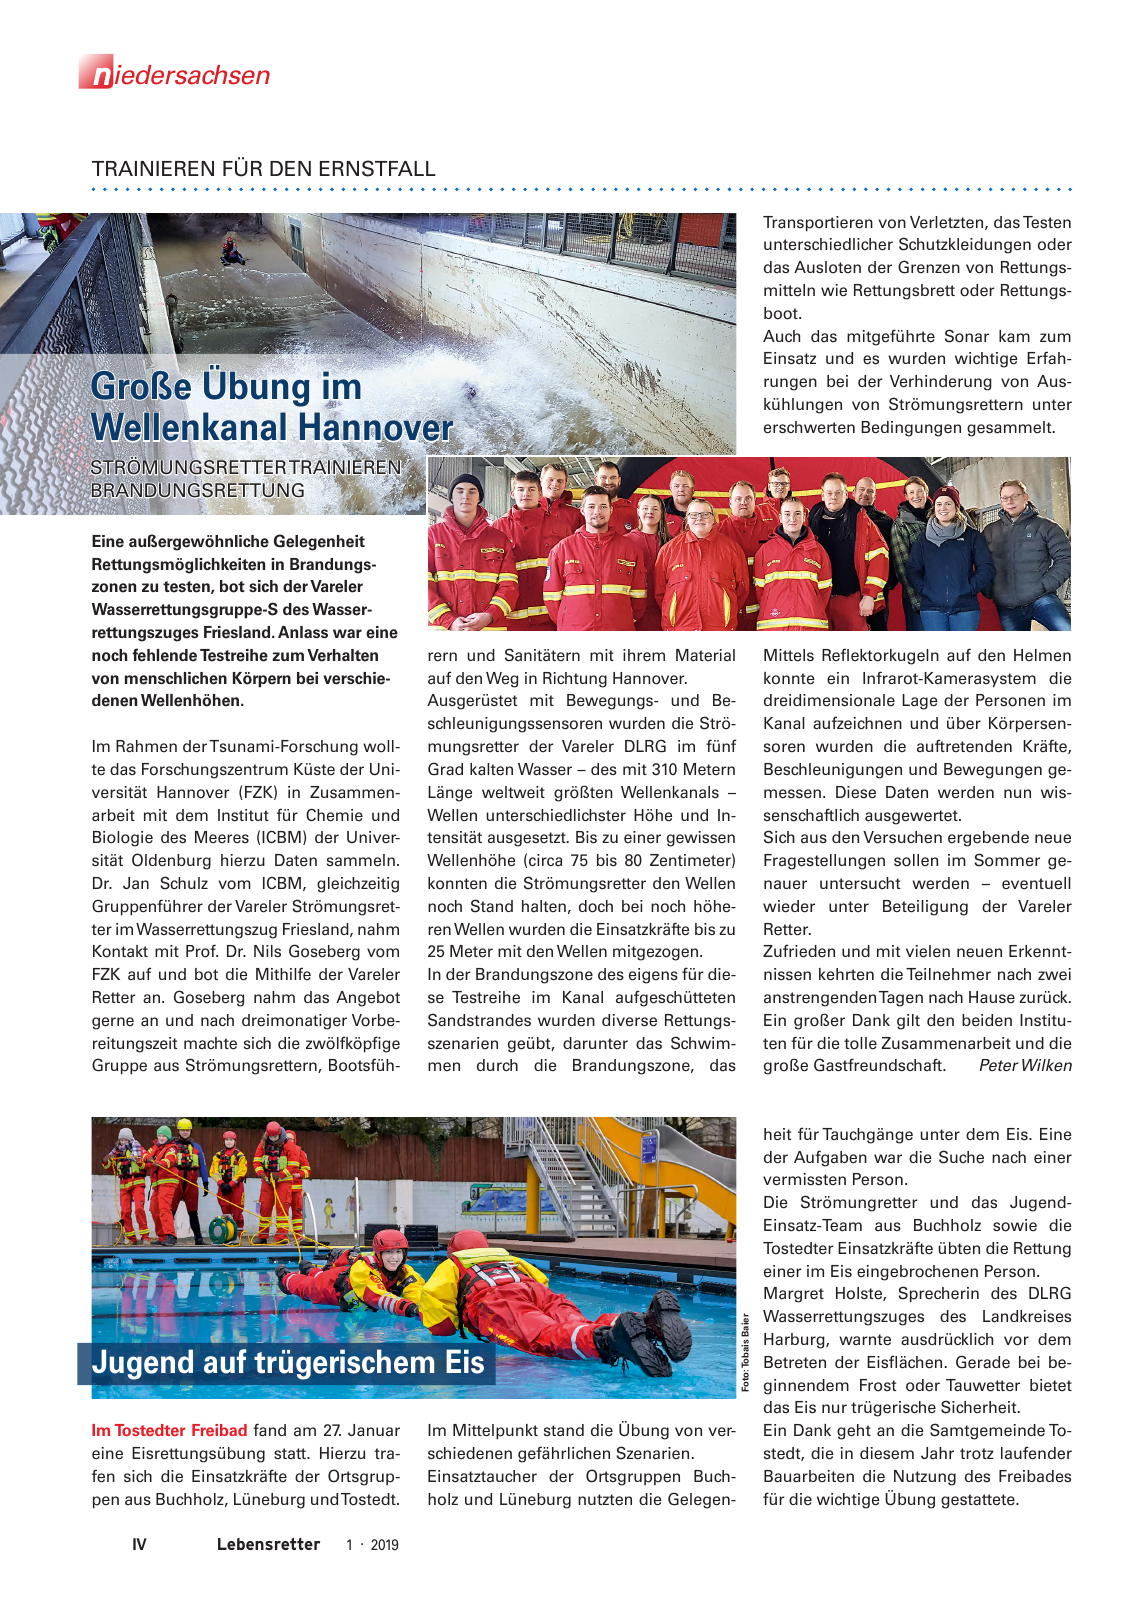 Vorschau Lebensretter 1/2019 –  Regionalausgabe Niedersachsen Seite 6